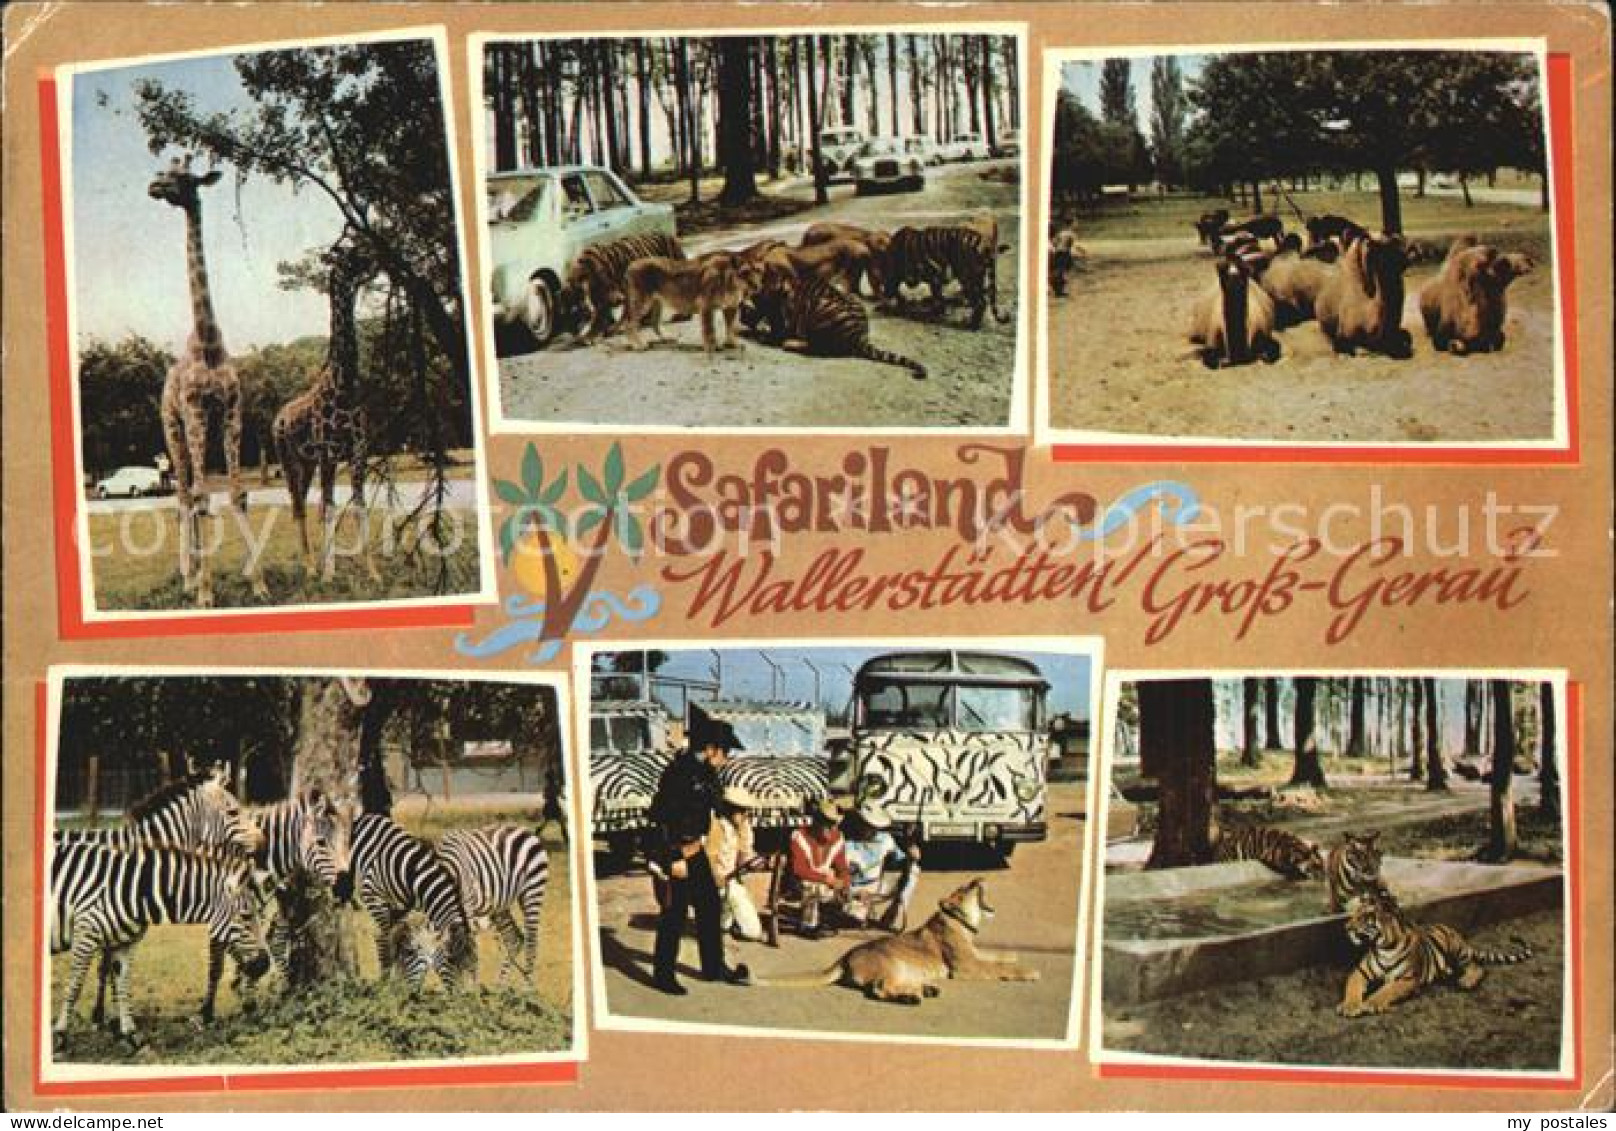 72486088 Gross-Gerau Safariland Wallerst?dten Gross-Gerau - Gross-Gerau